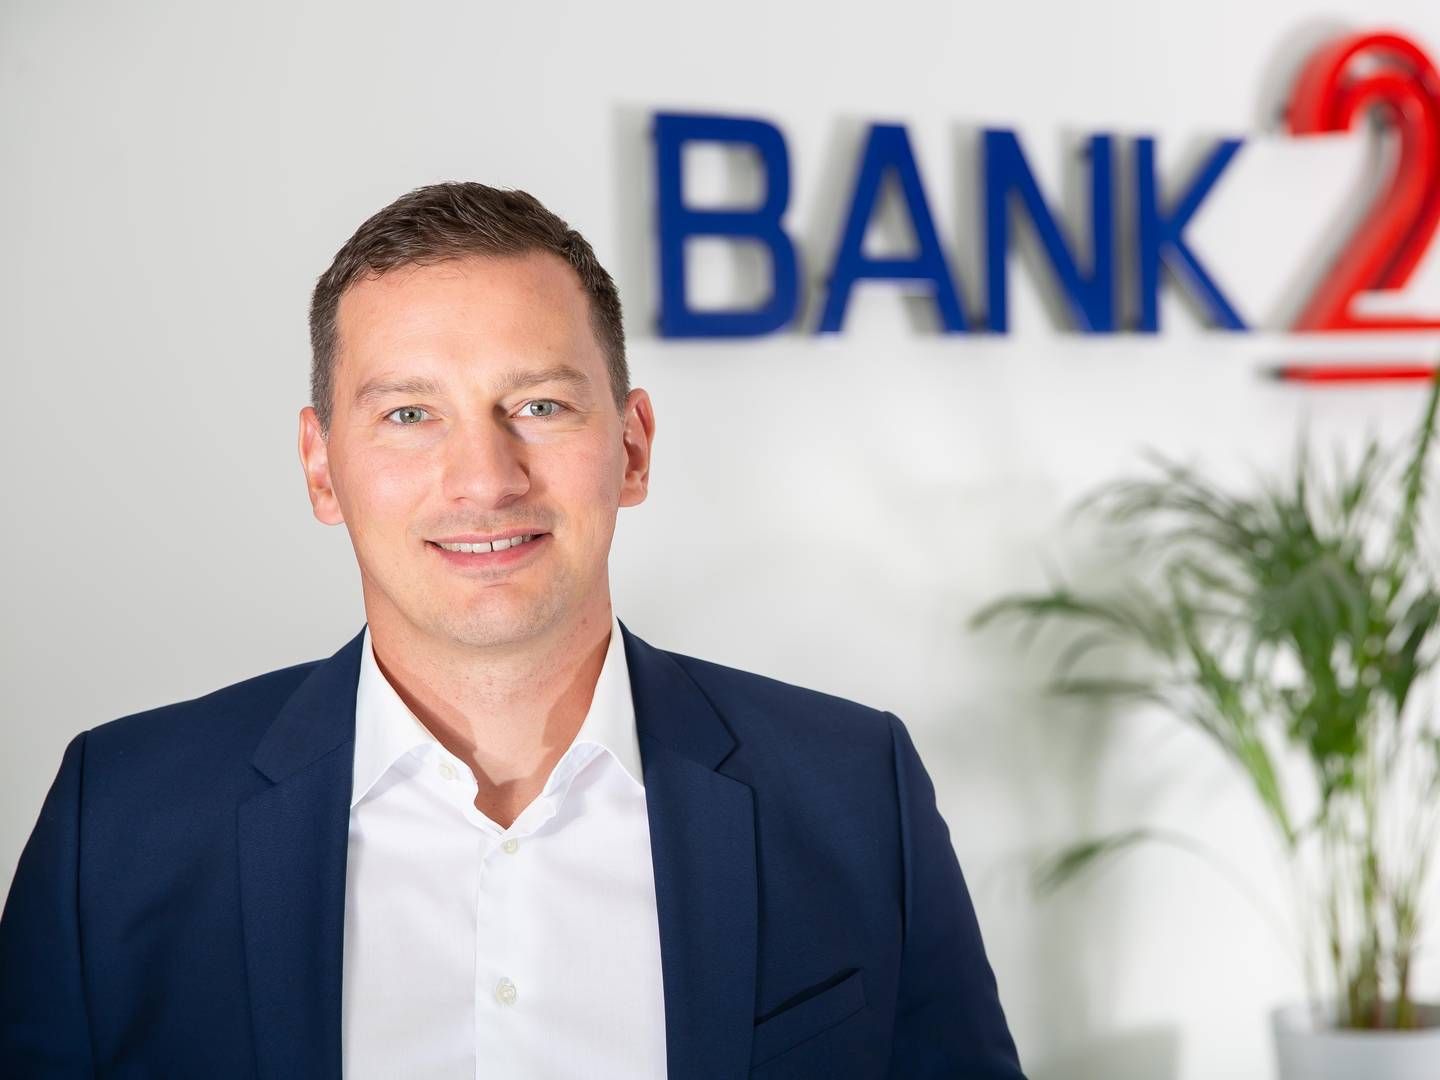 Gjeldsekspert i Bank2 Sebastian Mikolajczyk sier at rentehevingen vil få et drastisk utfall for de norske husholdningene. | Foto: Bank2